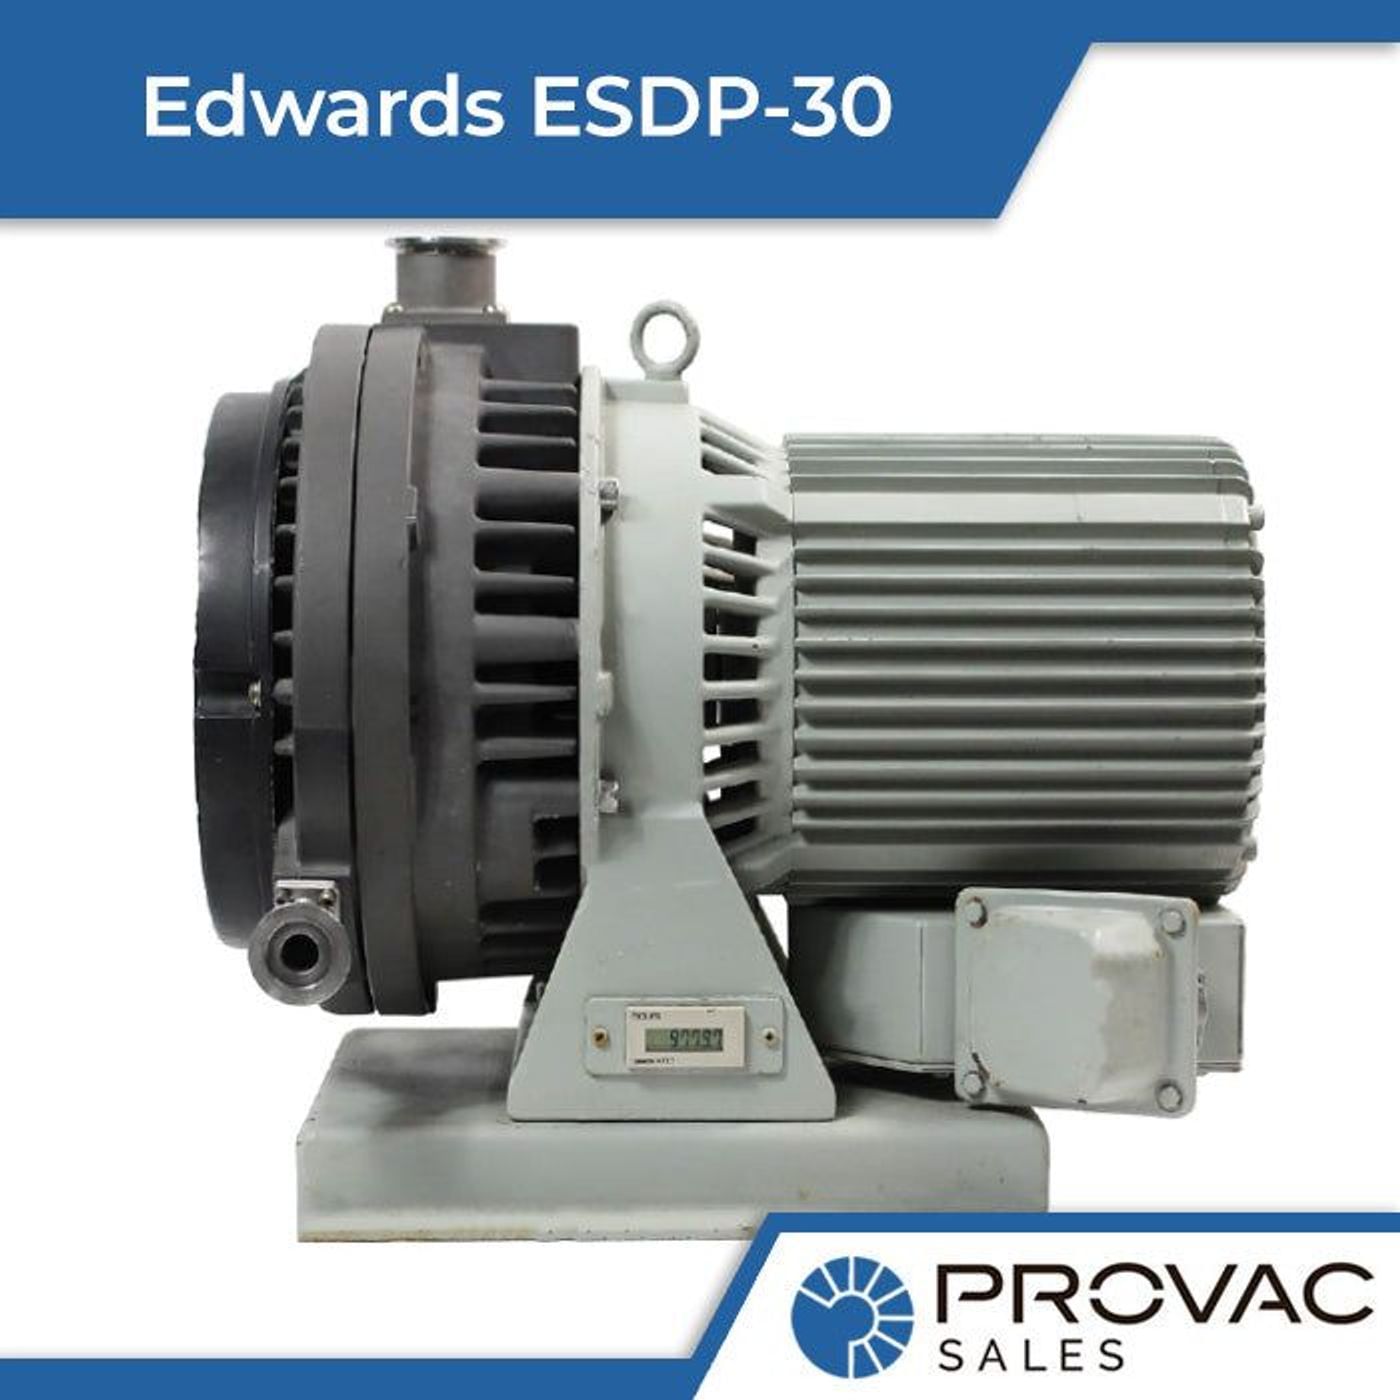 Edwards ESDP-30 Scroll Pump